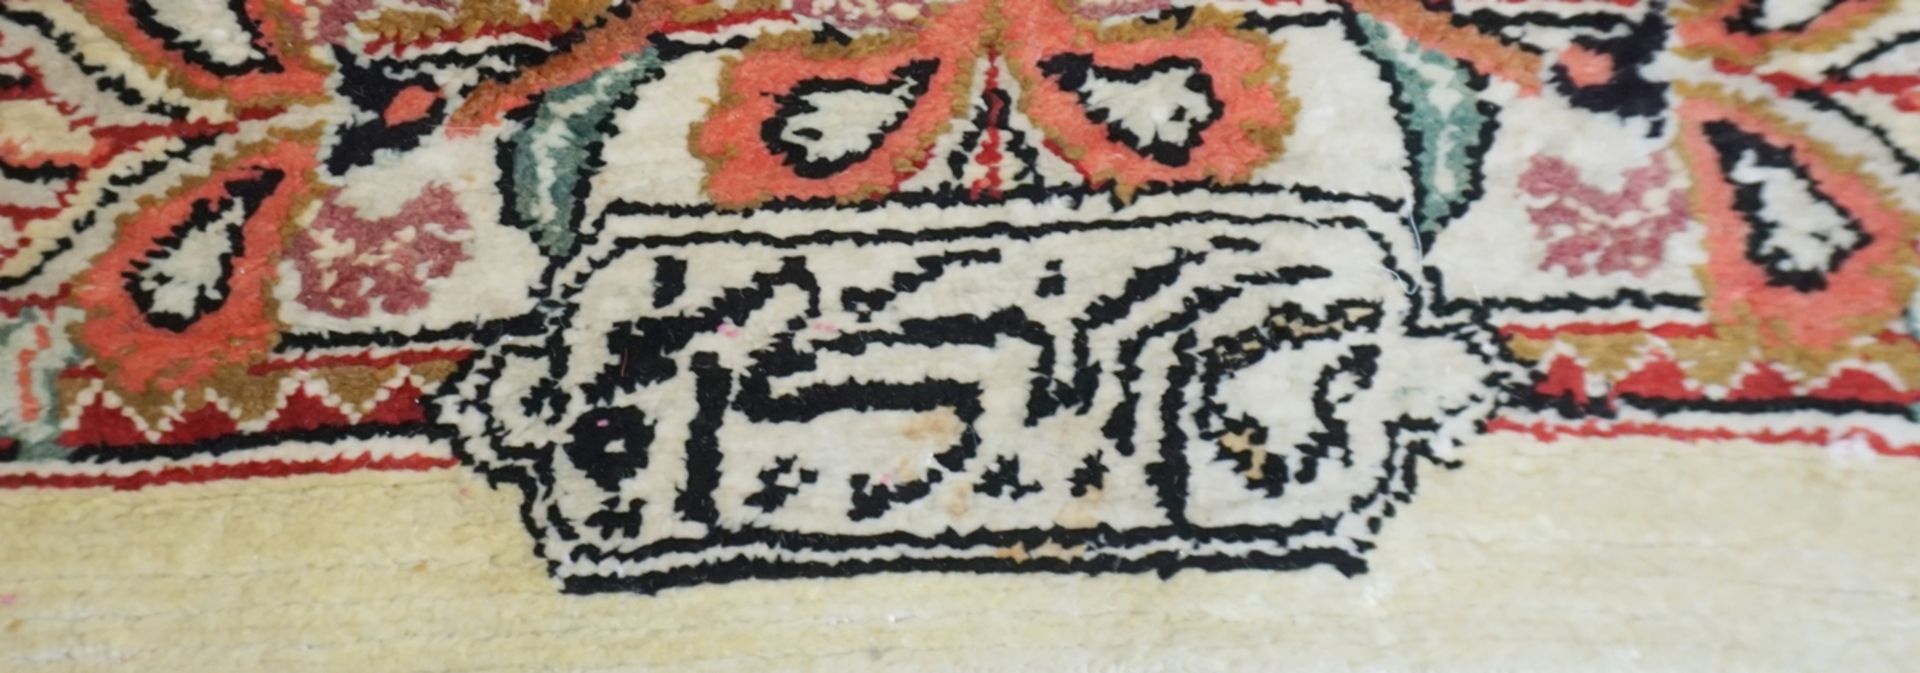 Teppich mit floralem Dekor und Tieren, rosé, Hereke, Seide, signiert - Bild 3 aus 4